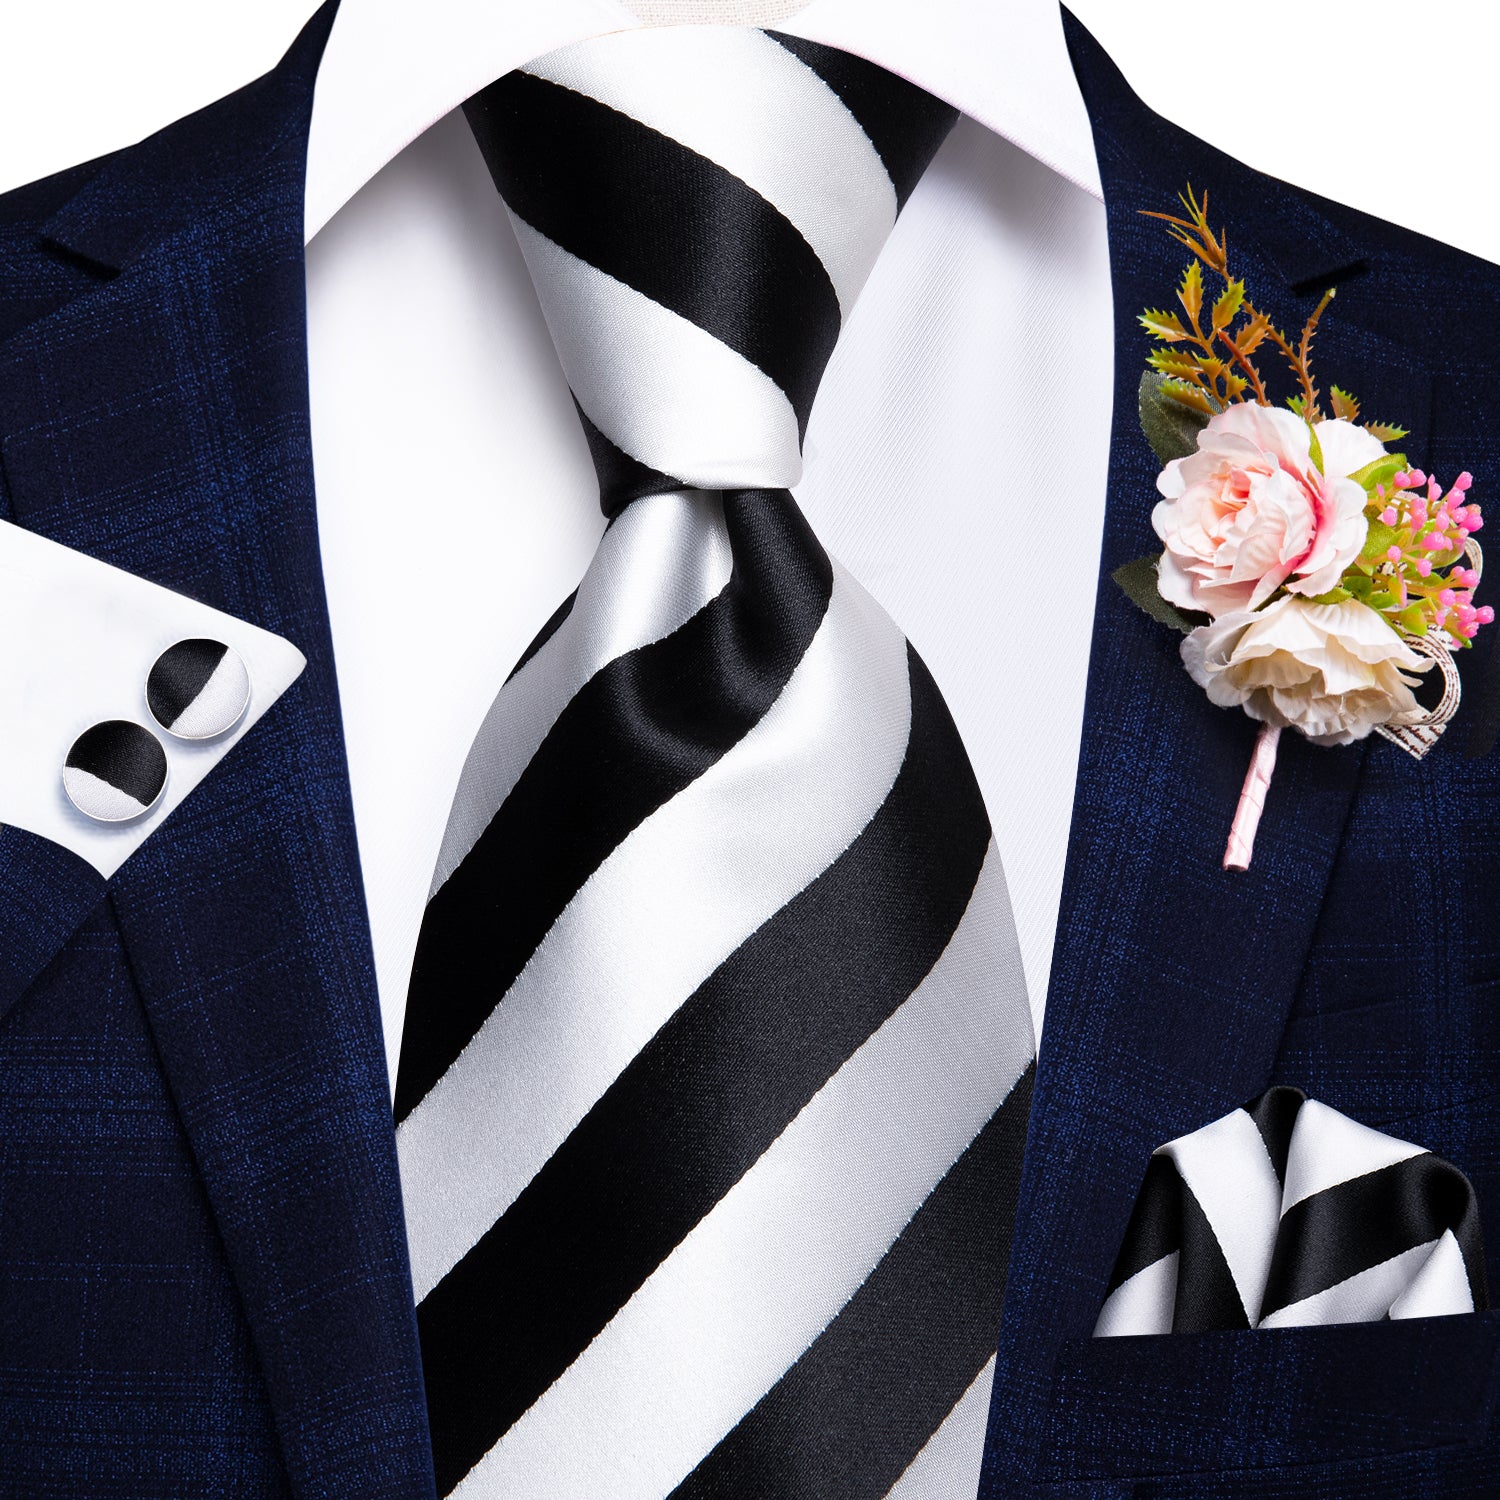 White Black Striped Tie Tie Handkerchief Cufflinks Set with Wedding Brooch